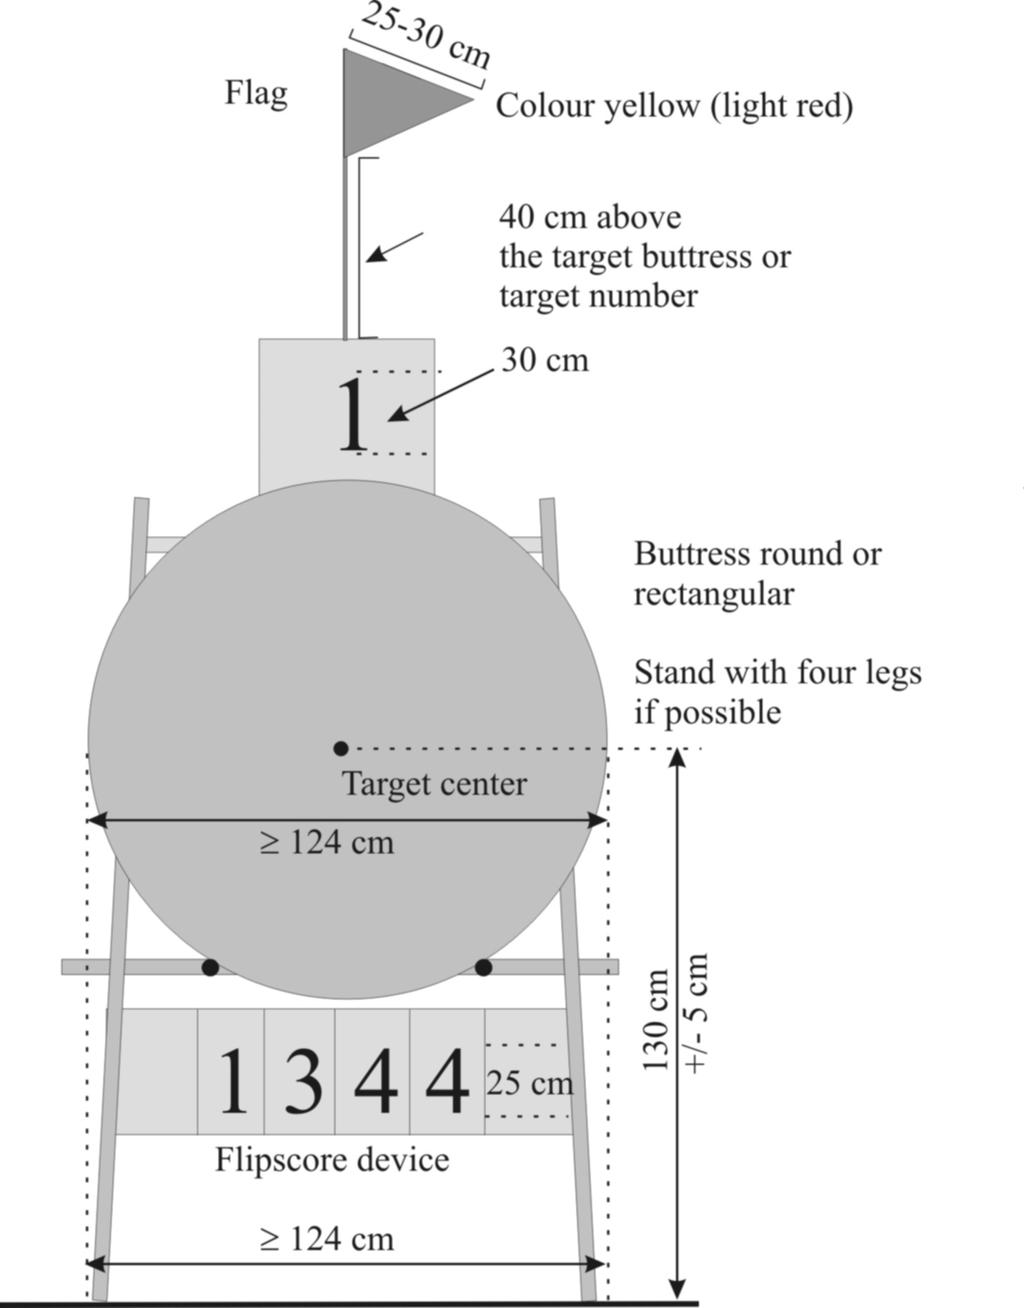 Image 2: Outdoor target butt set-up 7.2.1.2. Ieder doel dient een nummer te hebben. Deze nummer zijn minimaal 30 cm voor Outdoor en minimaal 15 cm voor Indoor.